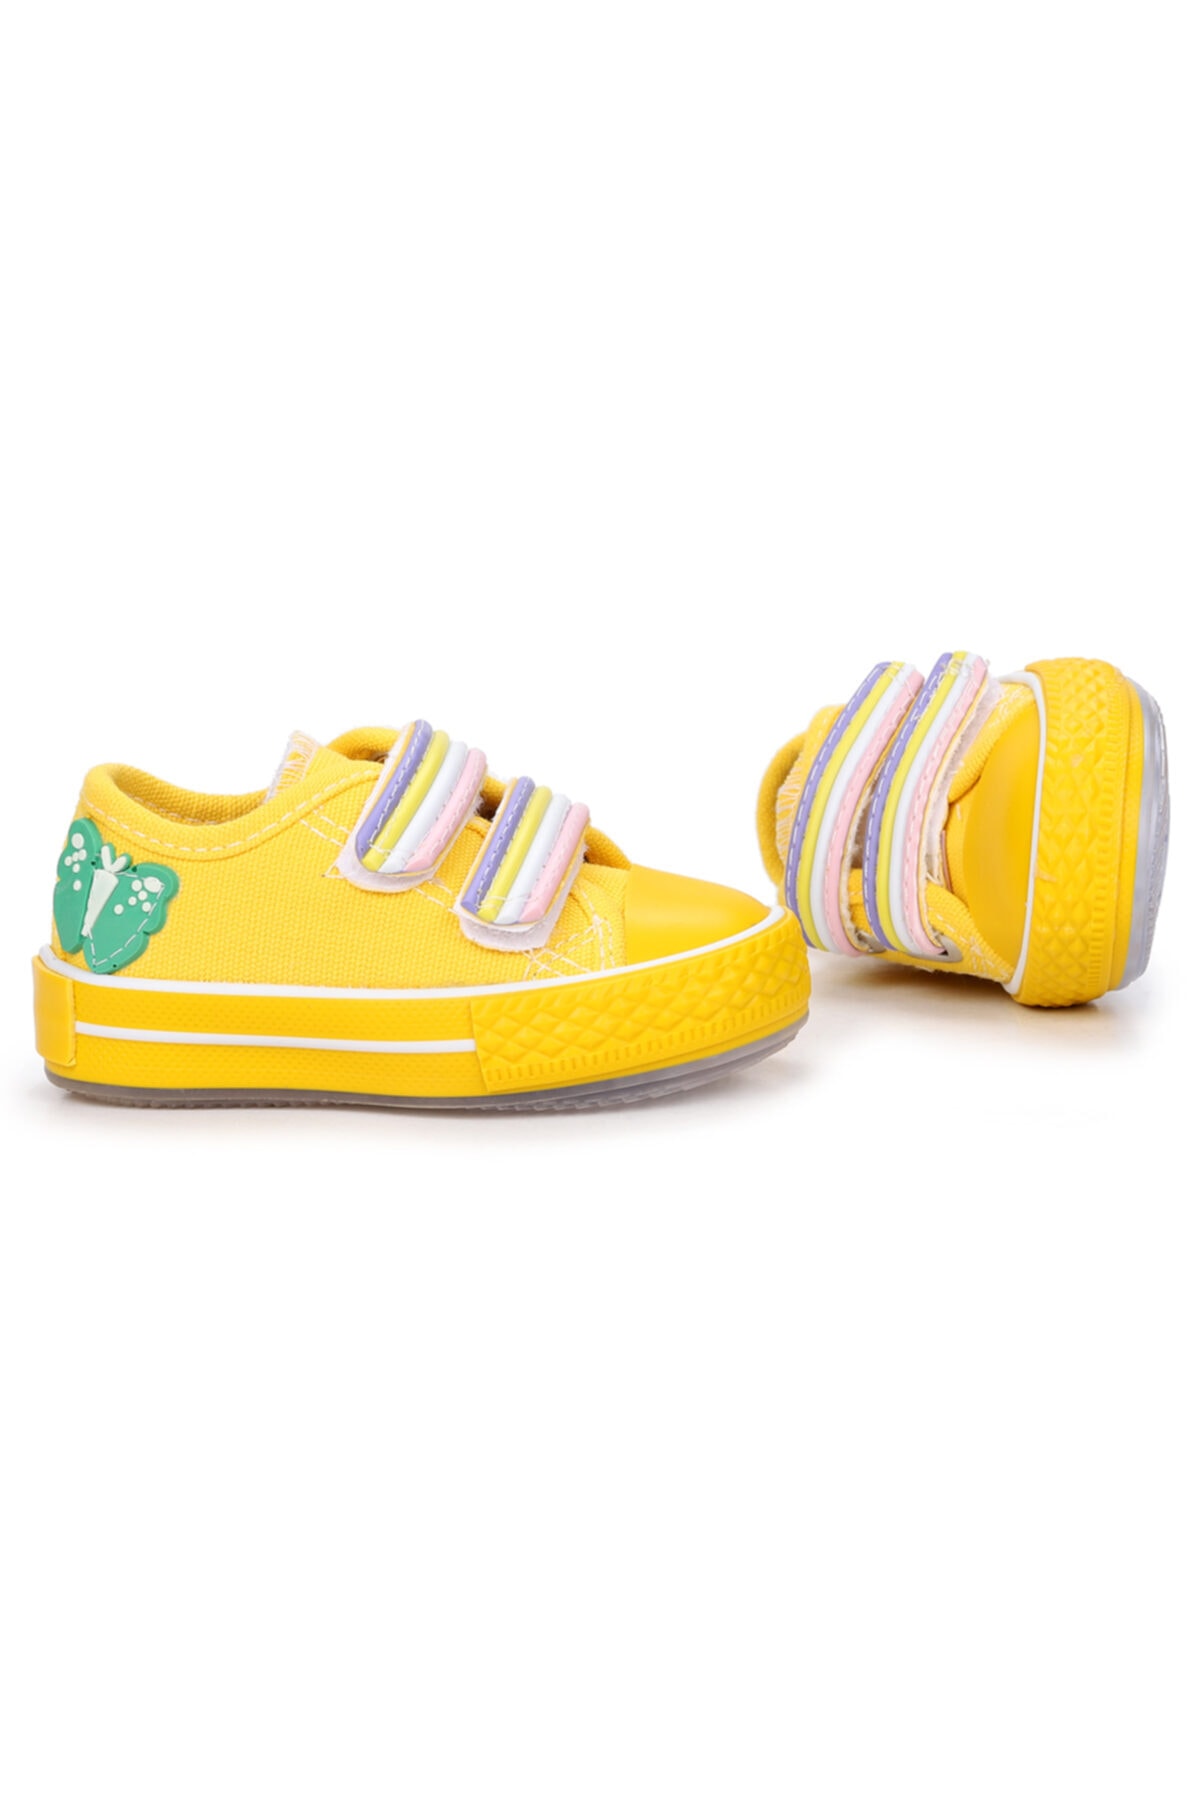 Kiko Kids Sarı - Alf 134 Renkli Cırt Işıklı Kız/erkek Çocuk Keten Spor Ayakkabı